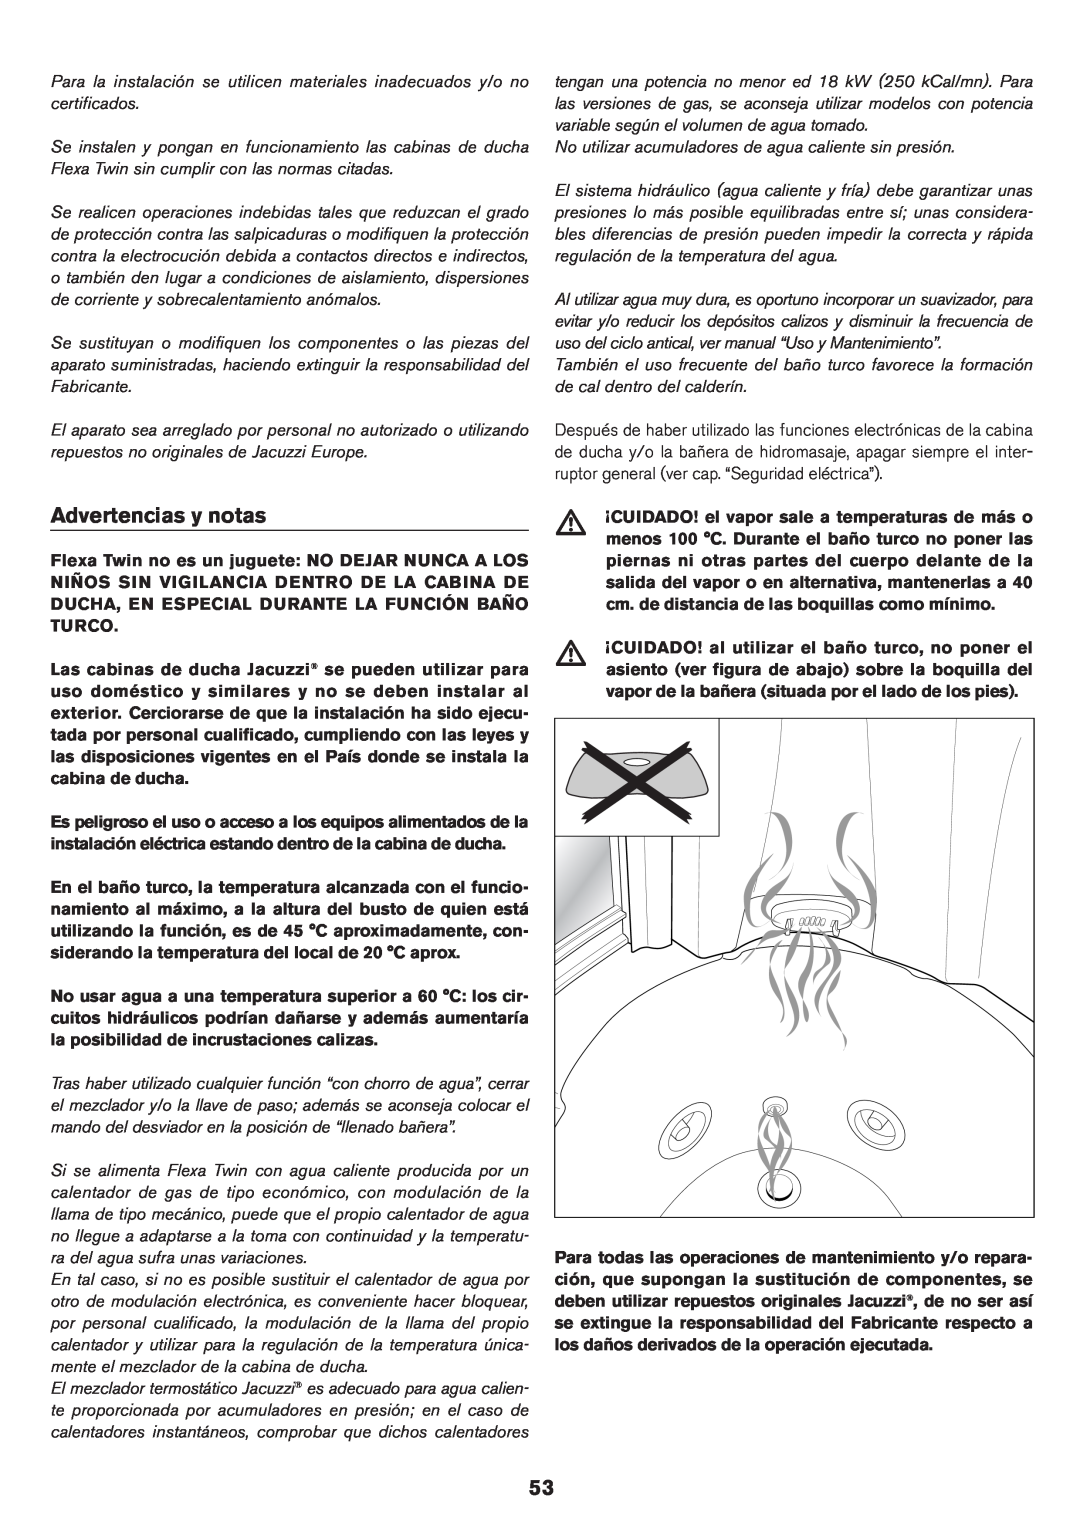 Jacuzzi ELT 10 installation manual Advertencias y notas 